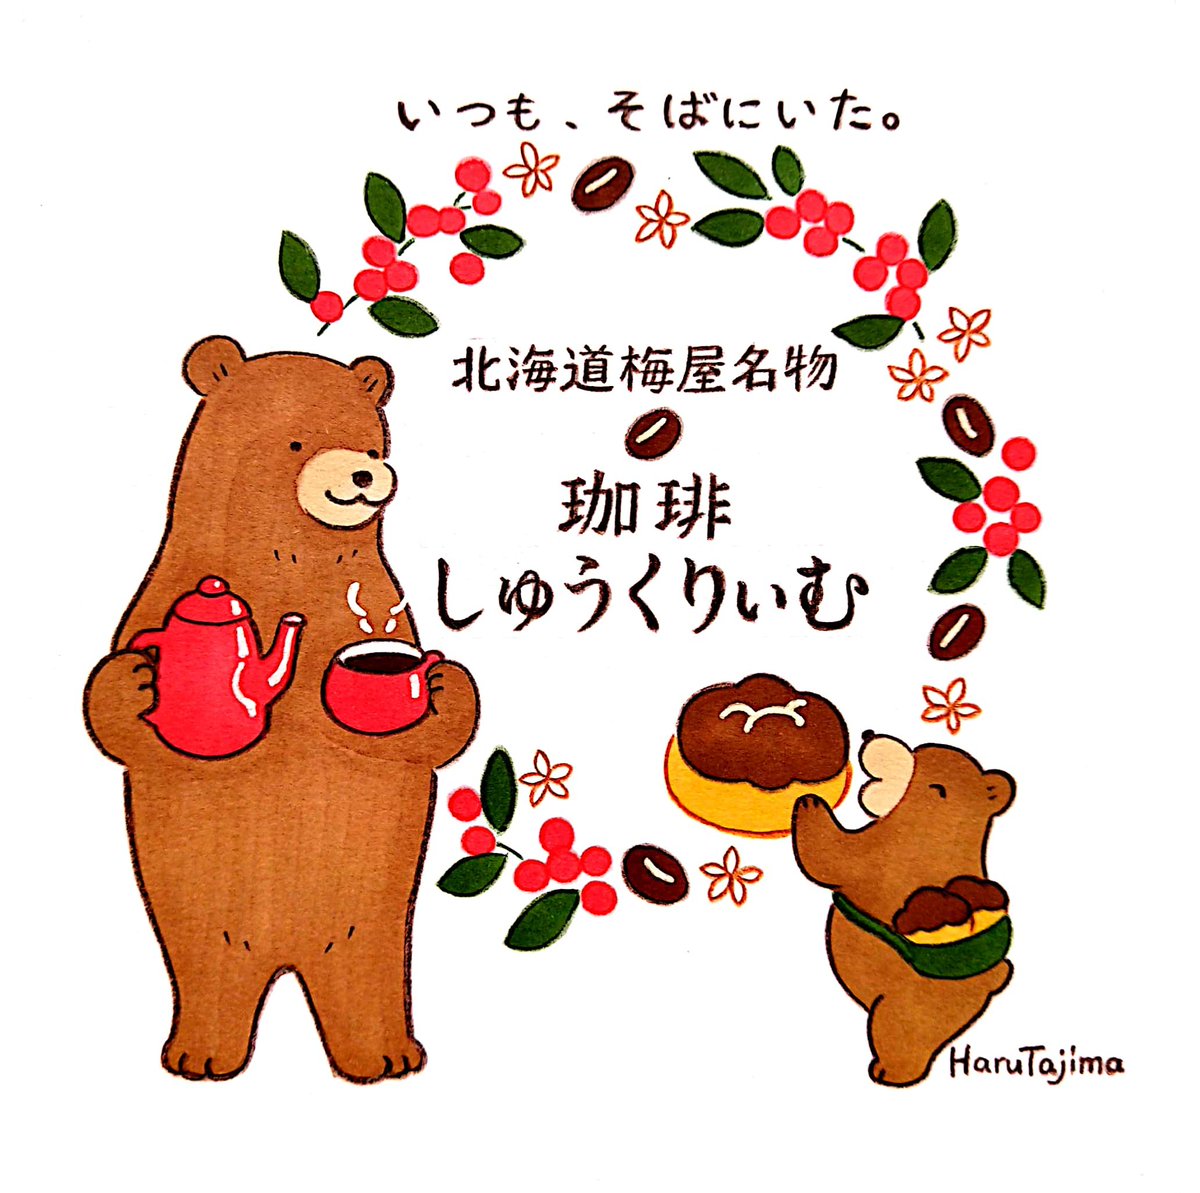 菓子処梅屋さんの「珈琲しゅうくりぃむ」が12月1日から新しいパッケージになり発売されました。北海道梅屋名物しゅうくりぃむに続き、こちらのイラストも担当しています。ほんのりビターな珈琲カスタードクリームがたっぷり入った、珈琲好きにはたまらないシュークリームです🐻☕️ #北海道 #イラスト 